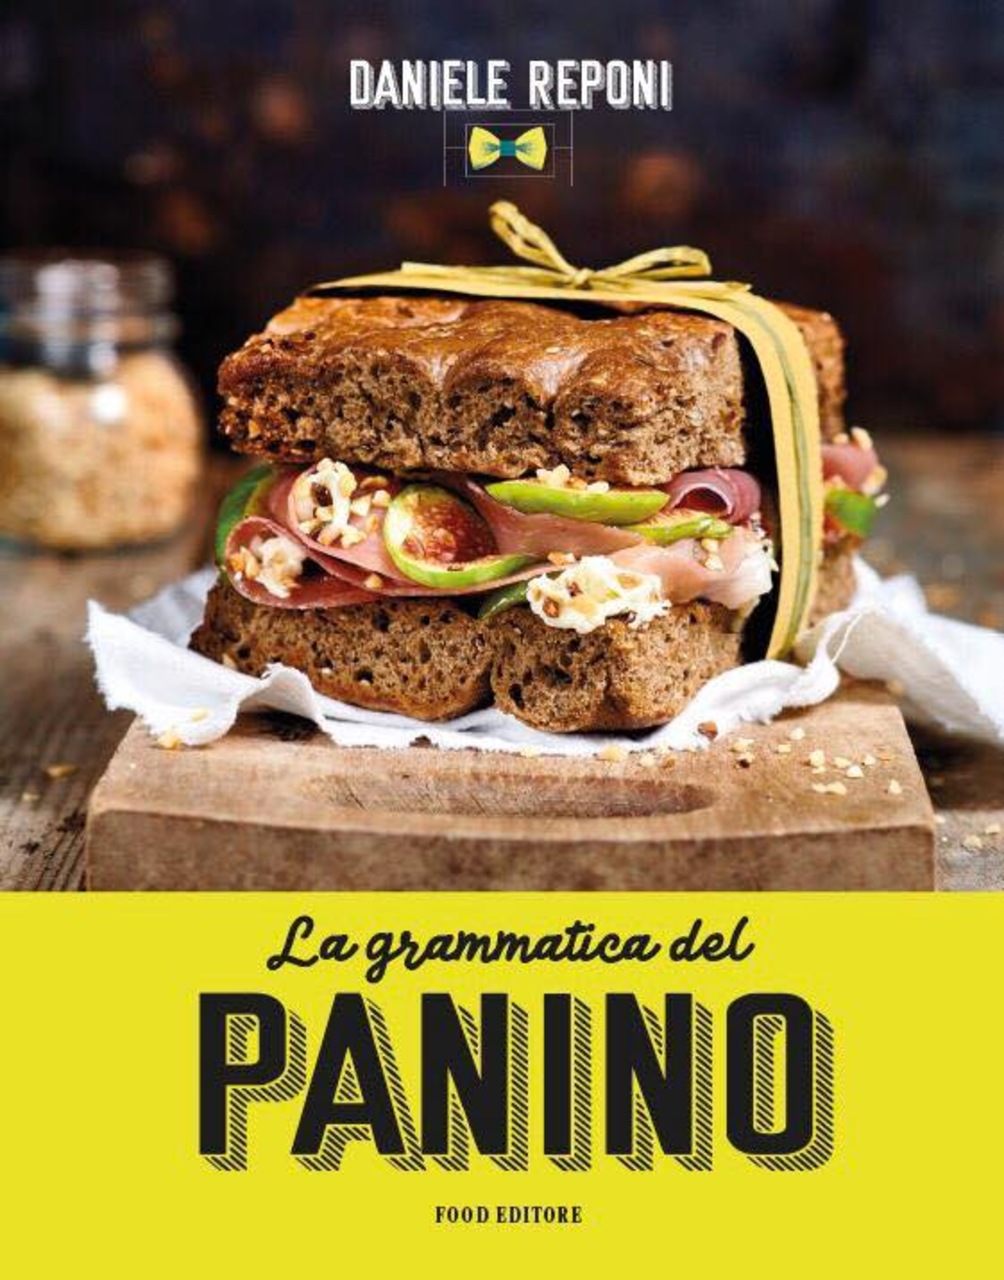 Gourmet-sandwich: forsiden af ​​bogen "Sandwichens grammatik" af Daniele Reponi